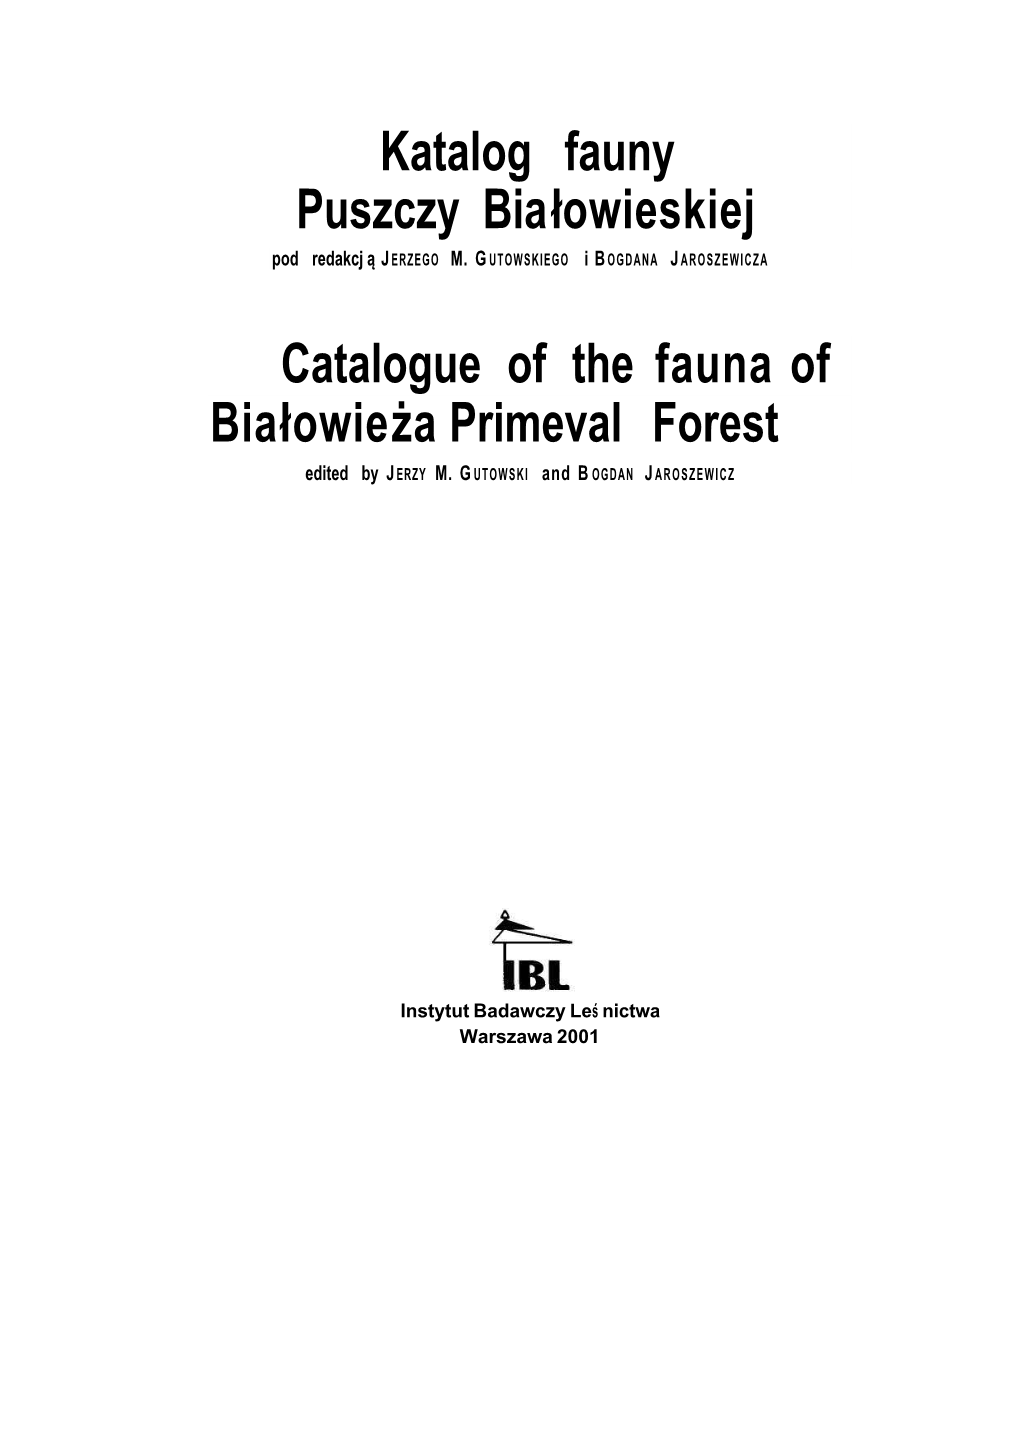 Katalog Fauny Puszczy Bialowieskiej